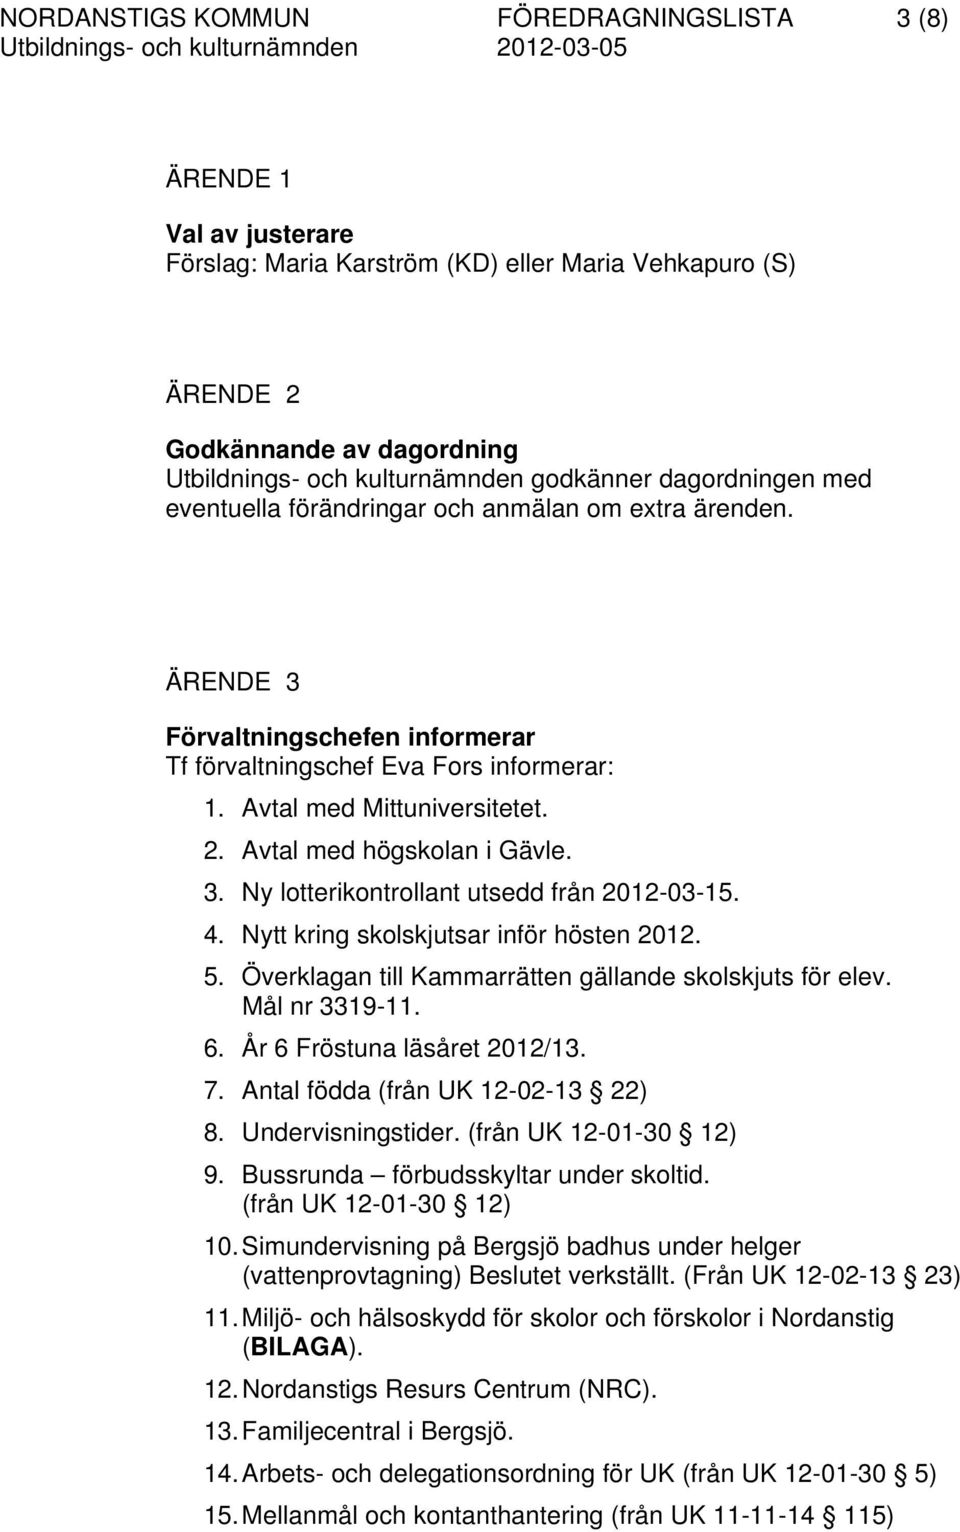 Avtal med högskolan i Gävle. 3. Ny lotterikontrollant utsedd från 2012-03-15. 4. Nytt kring skolskjutsar inför hösten 2012. 5. Överklagan till Kammarrätten gällande skolskjuts för elev.